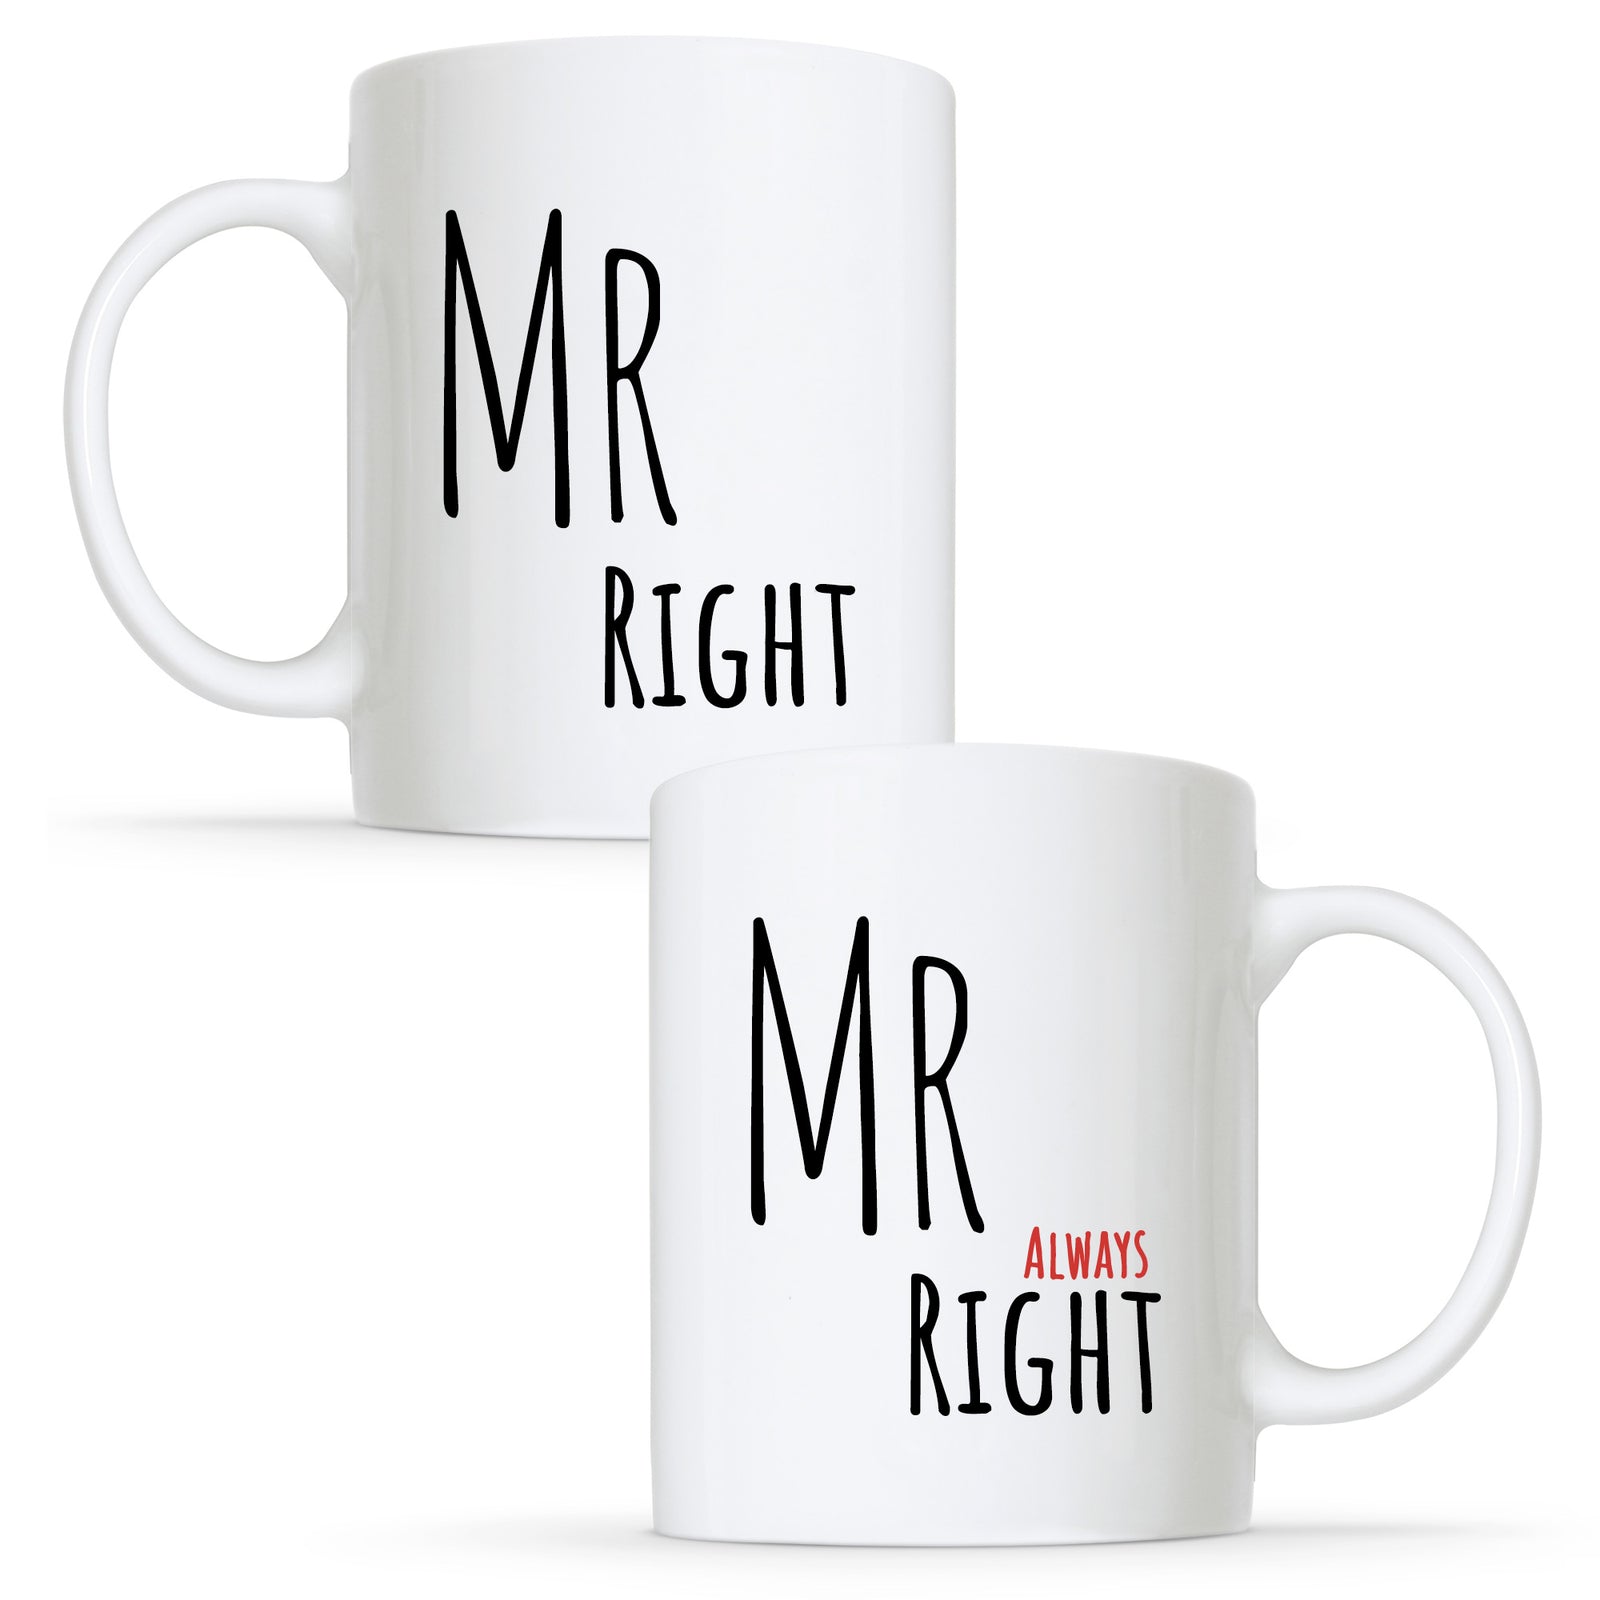 Gay Couple Mugs, Gay Couple Coffee Mugs, Funny Gay Mug Set, Gay Couple  Gift, His and His Mugs, Funny Gay Gift, Gay Couple Matching Cups